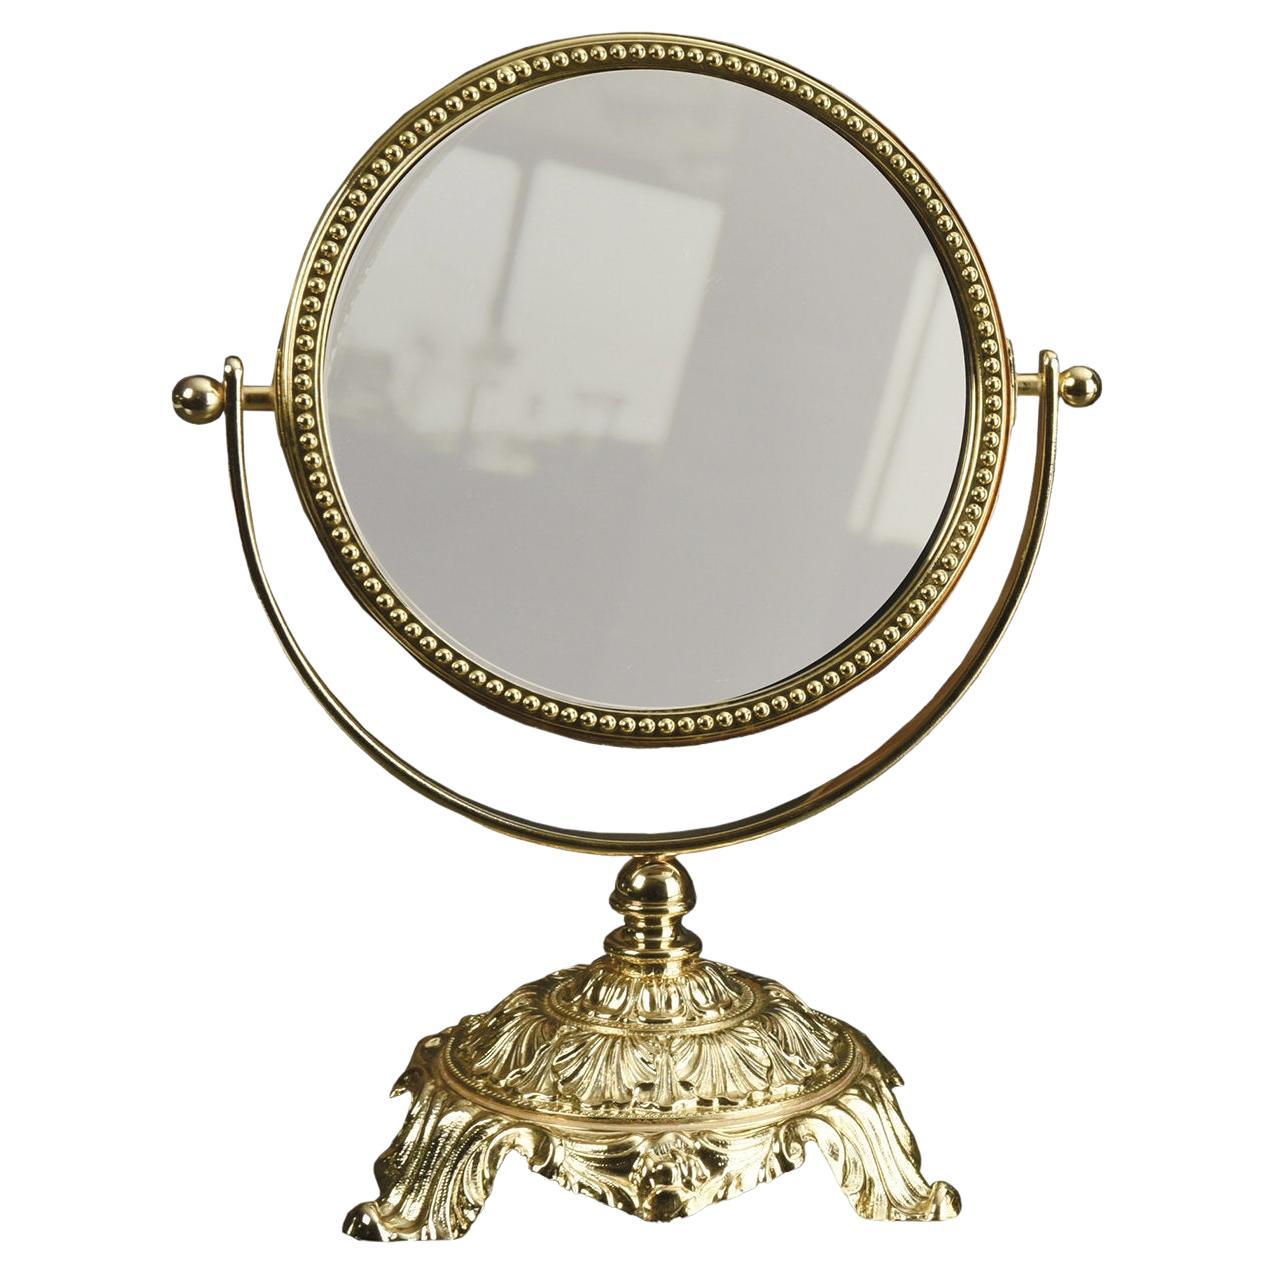 Golden Vanity Table Mirror